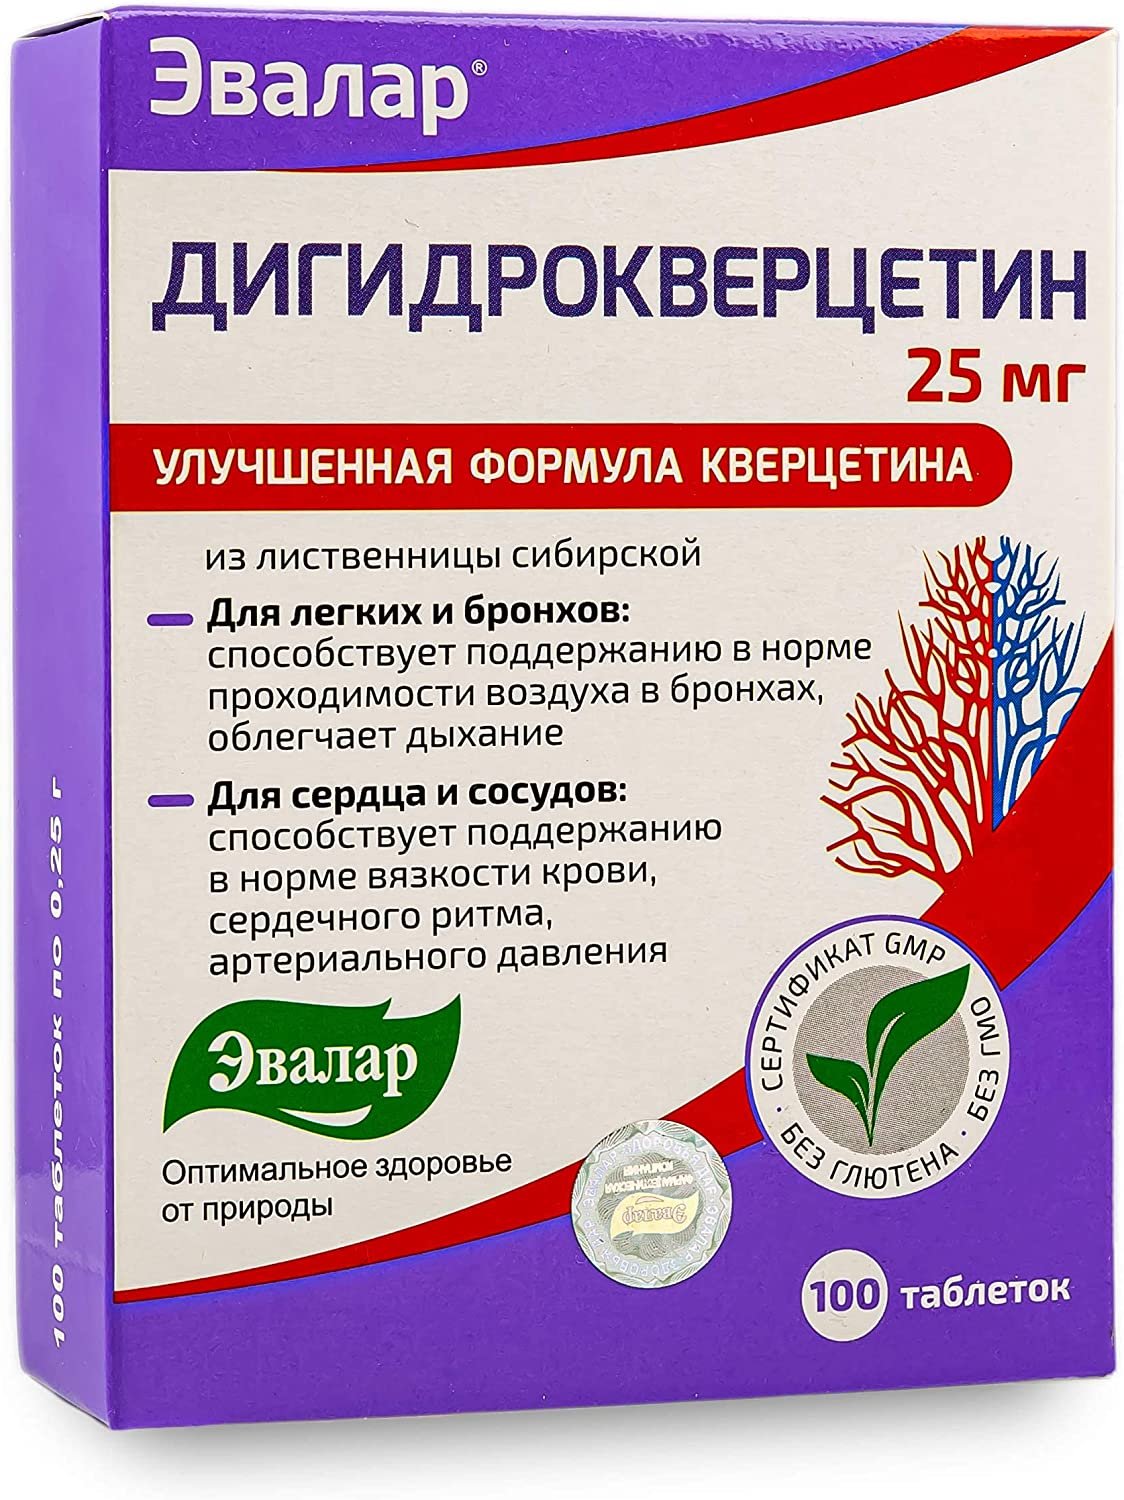 Dihydro Quercétine Evalar Bioflavonoïde de mélèze de pin de Sibérie 100 comprimés